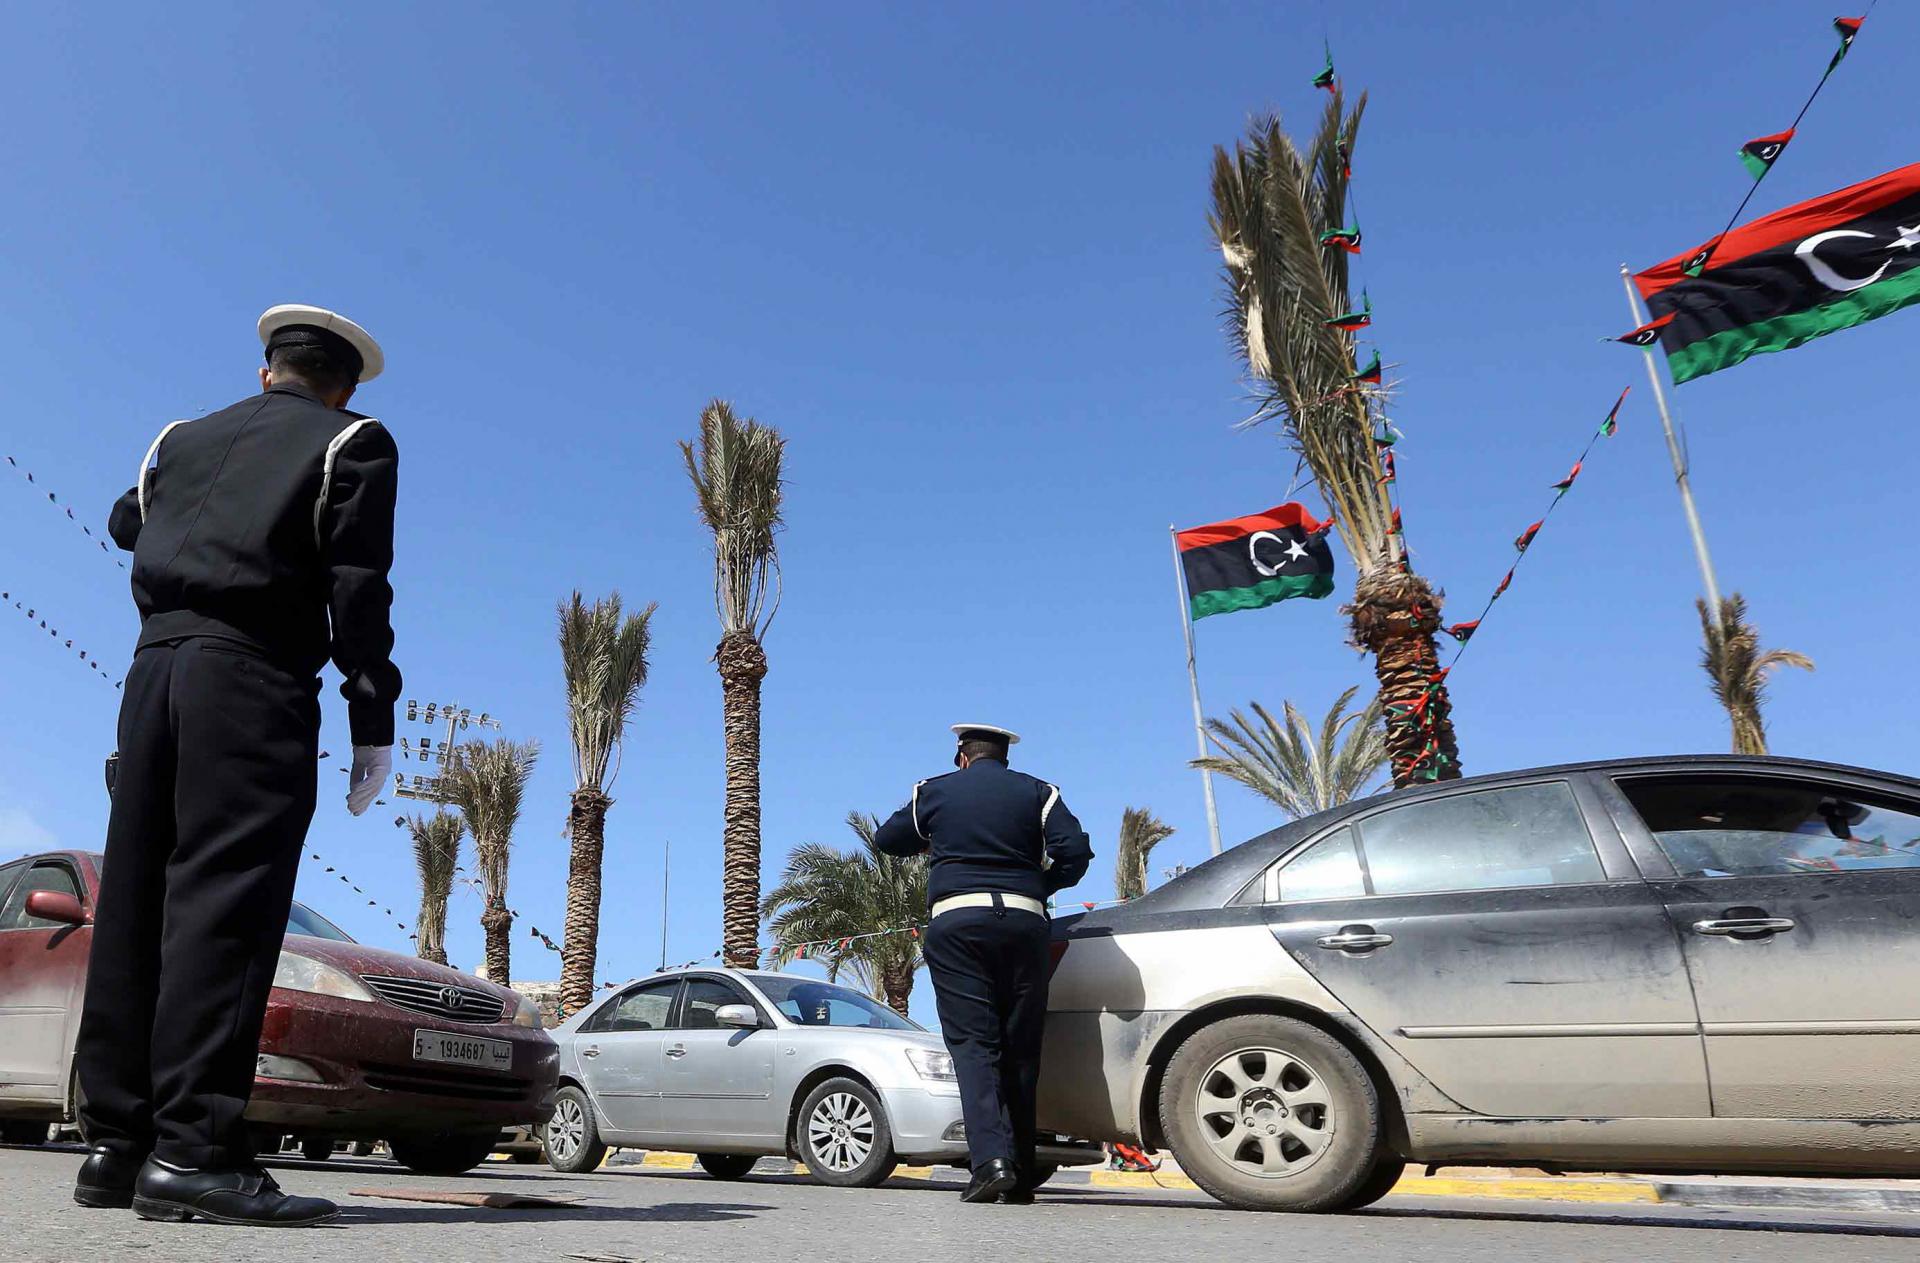 أرقام مفزعة لضحايا حوادث الطرق في ليبيا